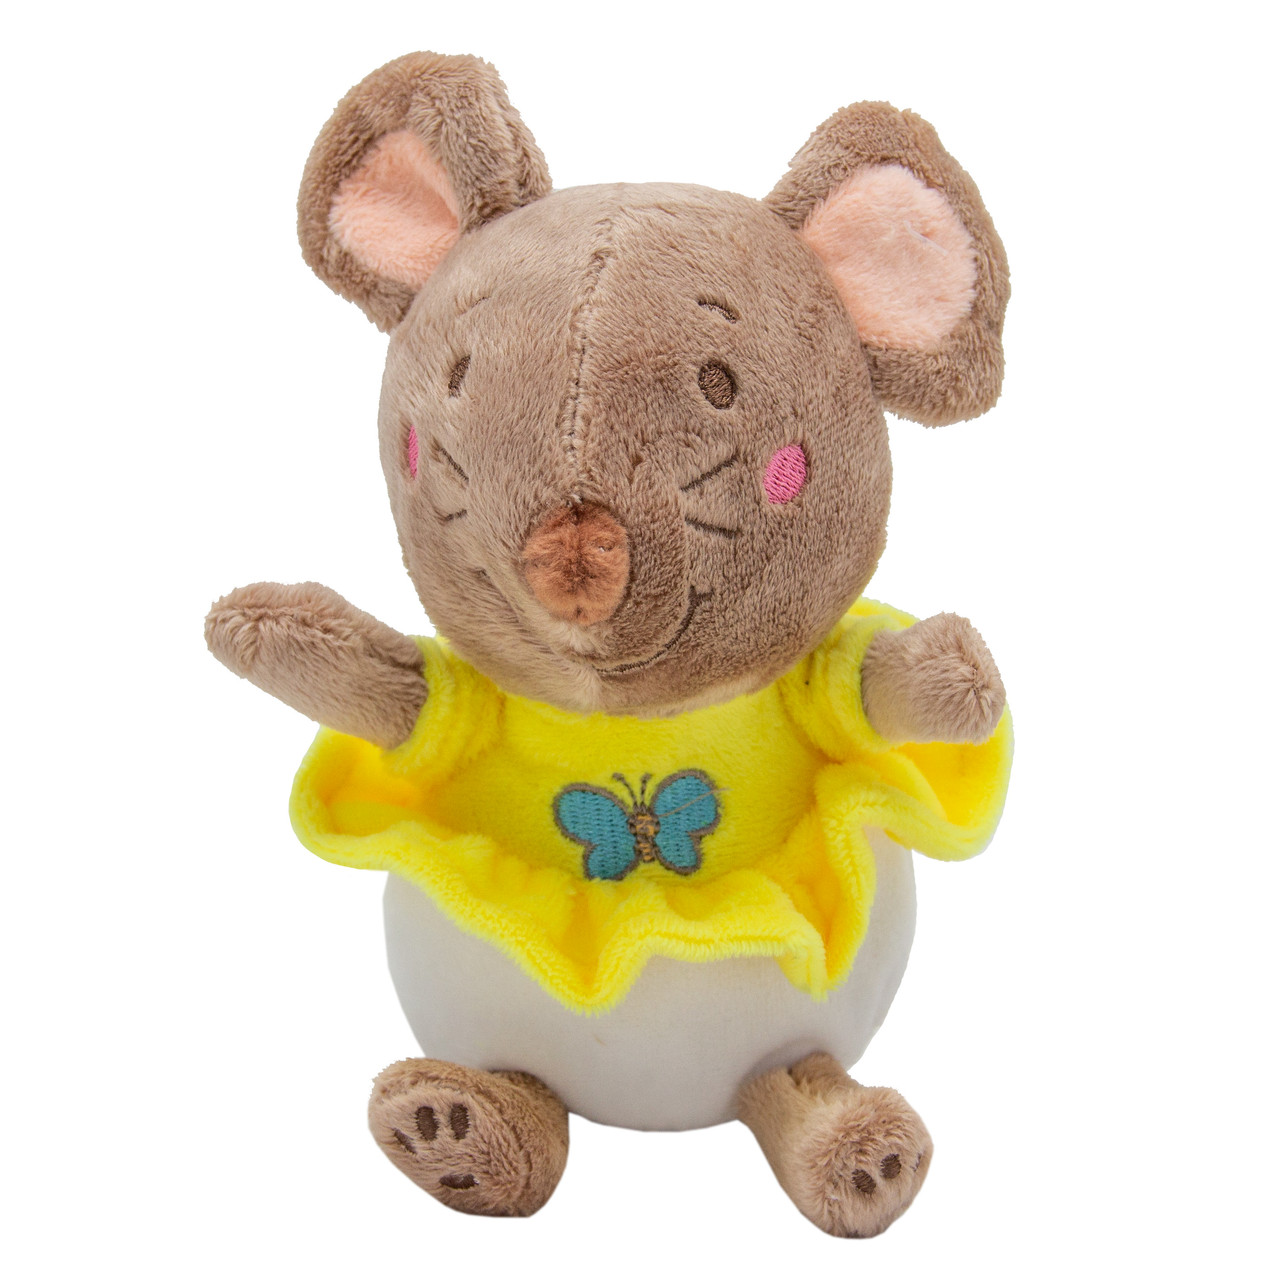 М'яка іграшка щур у жовтій сукні, 14 см (D1826214-1)